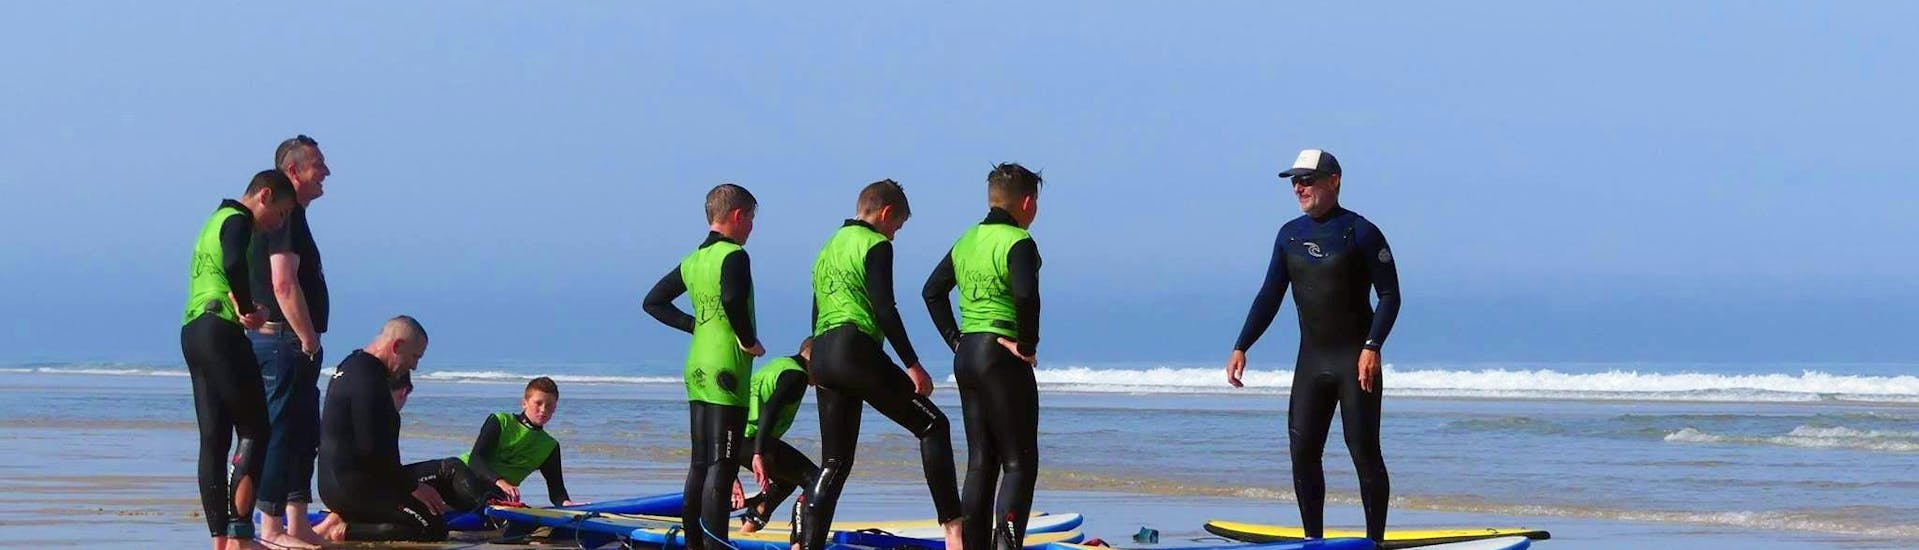 Surfer machen sich bereit für ihre Surfkurse (ab 9 J.) am Messanges South Beach mit der Messanges Surf School.